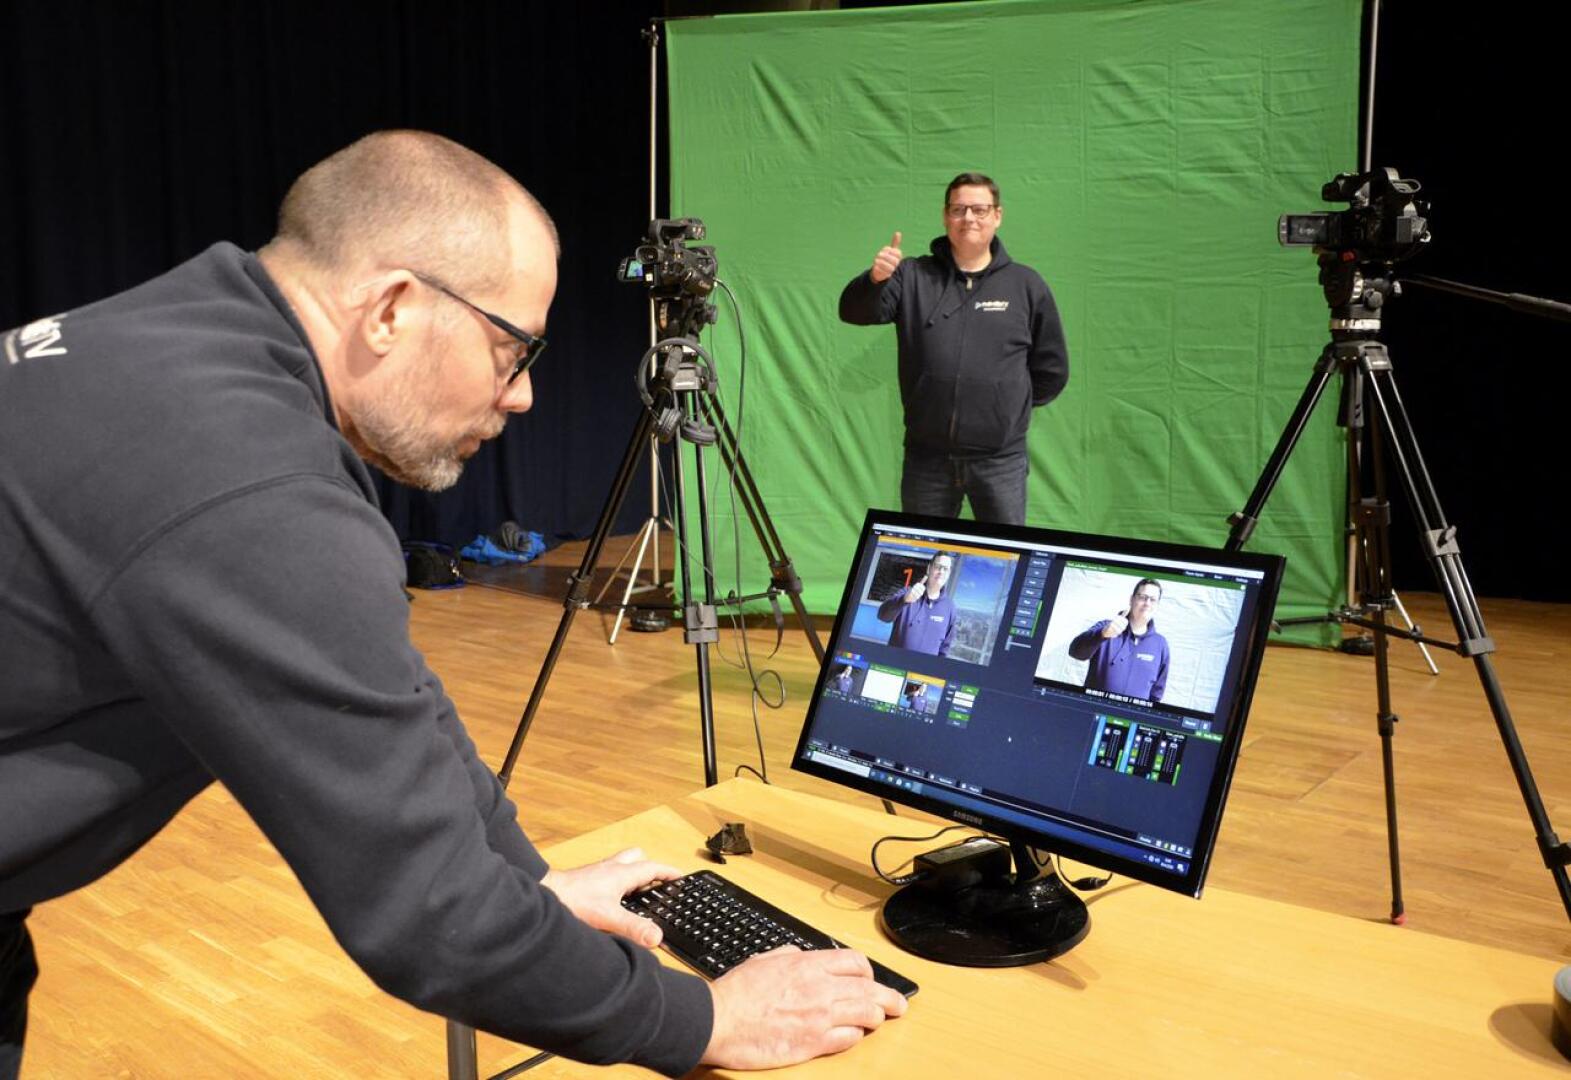 Veli Lesell ja Tero Mononen pääsivät vapunaattona testailemaan, miltä Etävappu-studio voisi näyttää virtuaalisessa ympäristössä.